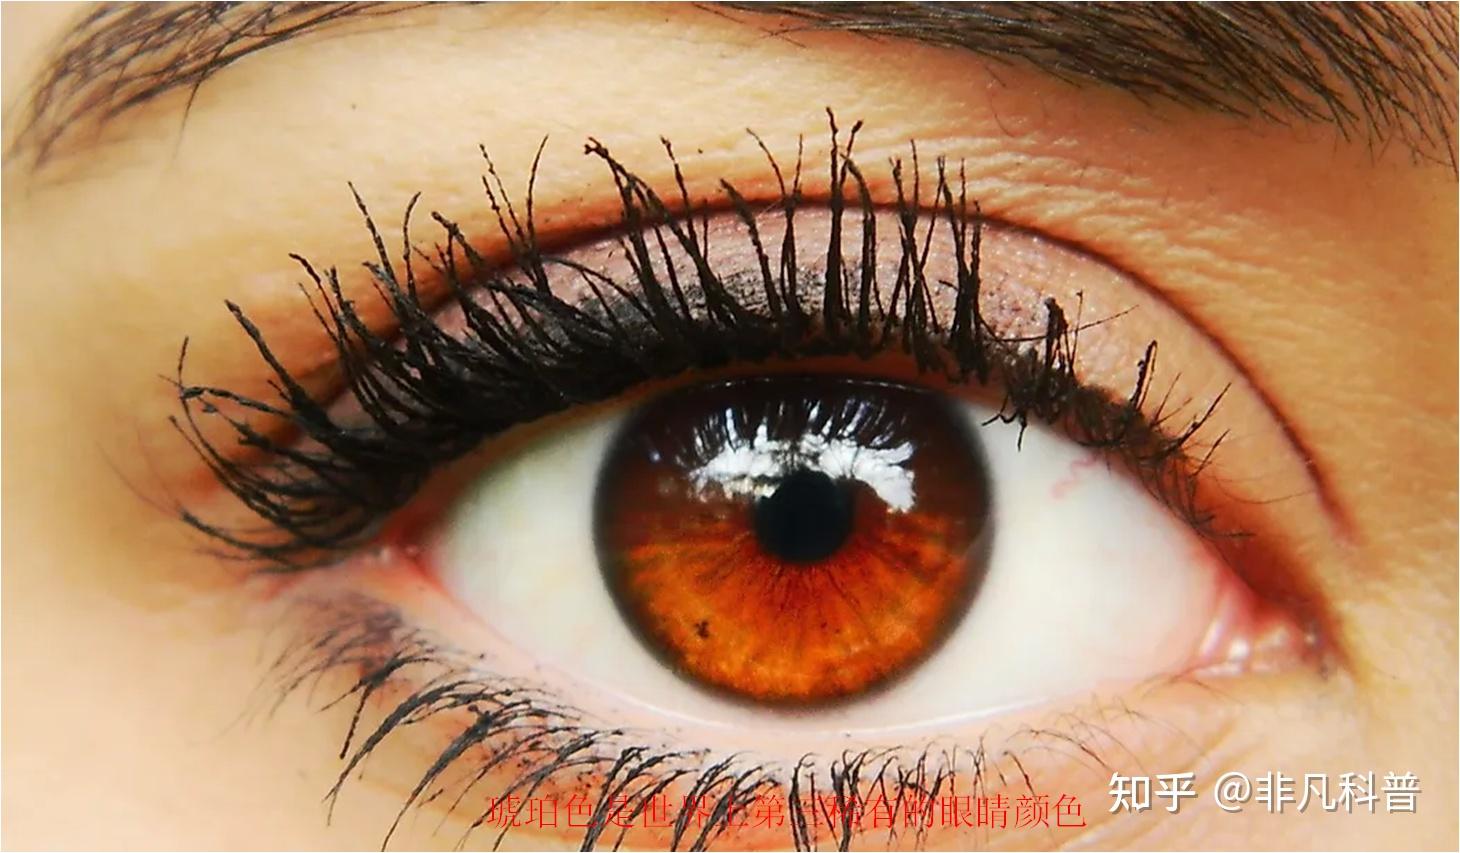 为什么人的眼睛有不同的颜色？各种眼睛颜色的人口比例是多少？ - 知乎